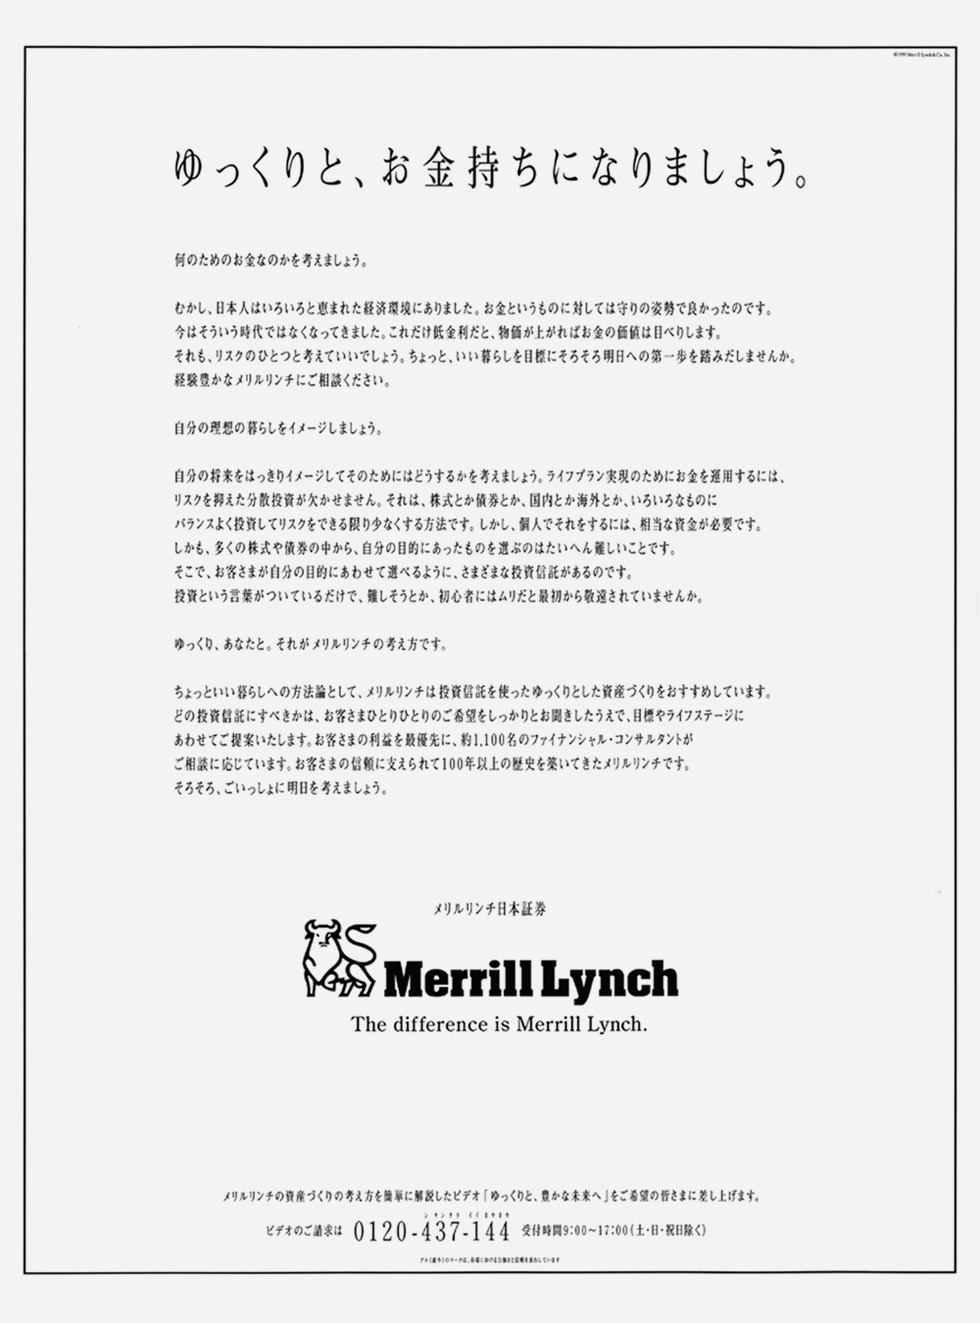 Merrill Lynch　メリルリンチ日本証券株式会社の広告デザイン キャッチコピーは「メリルリンチ、ゆっくりと、お金持ちになりましょう」